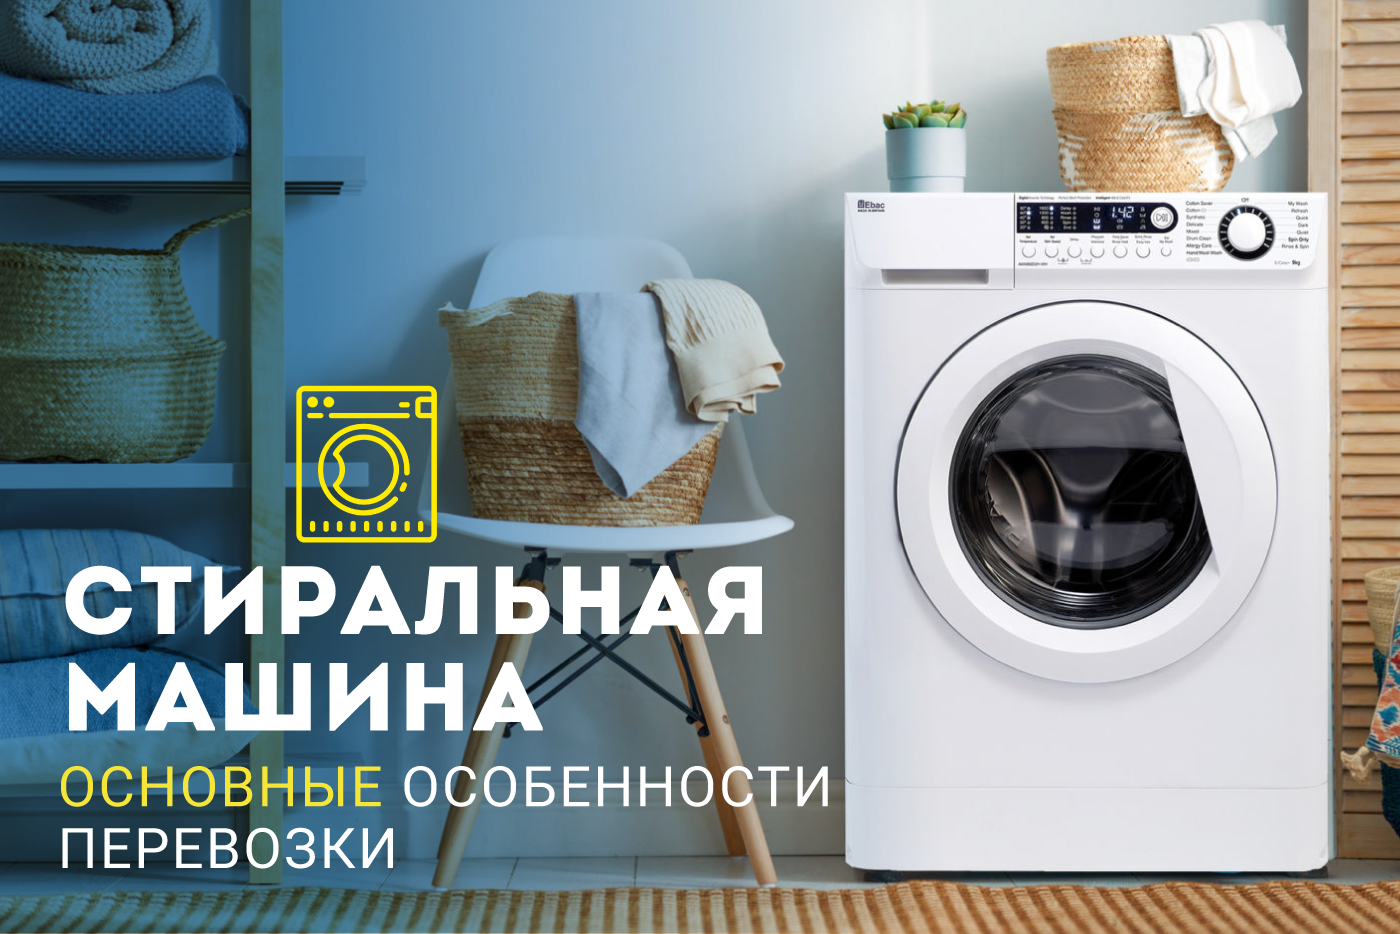 Основные особенности перевозки стиральной машины